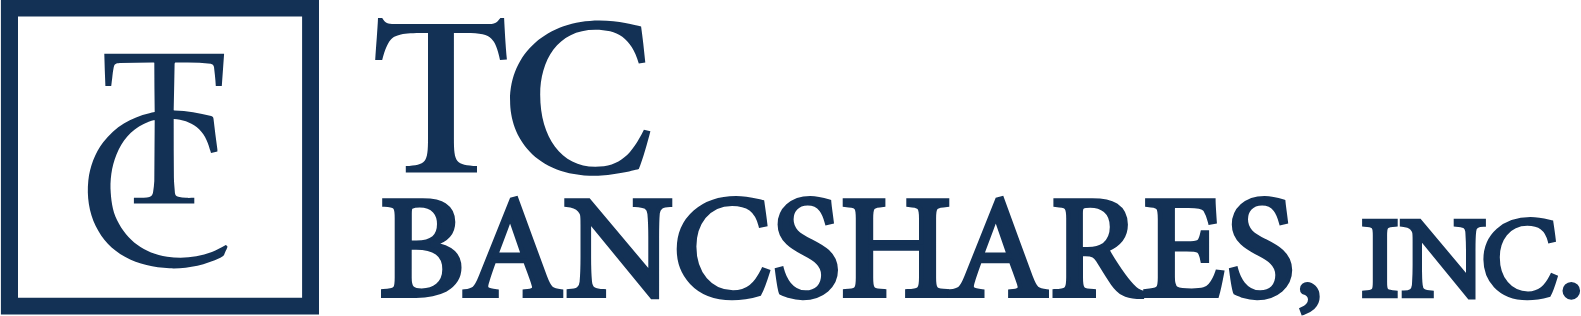 TC Bancshares logo large (transparent PNG)